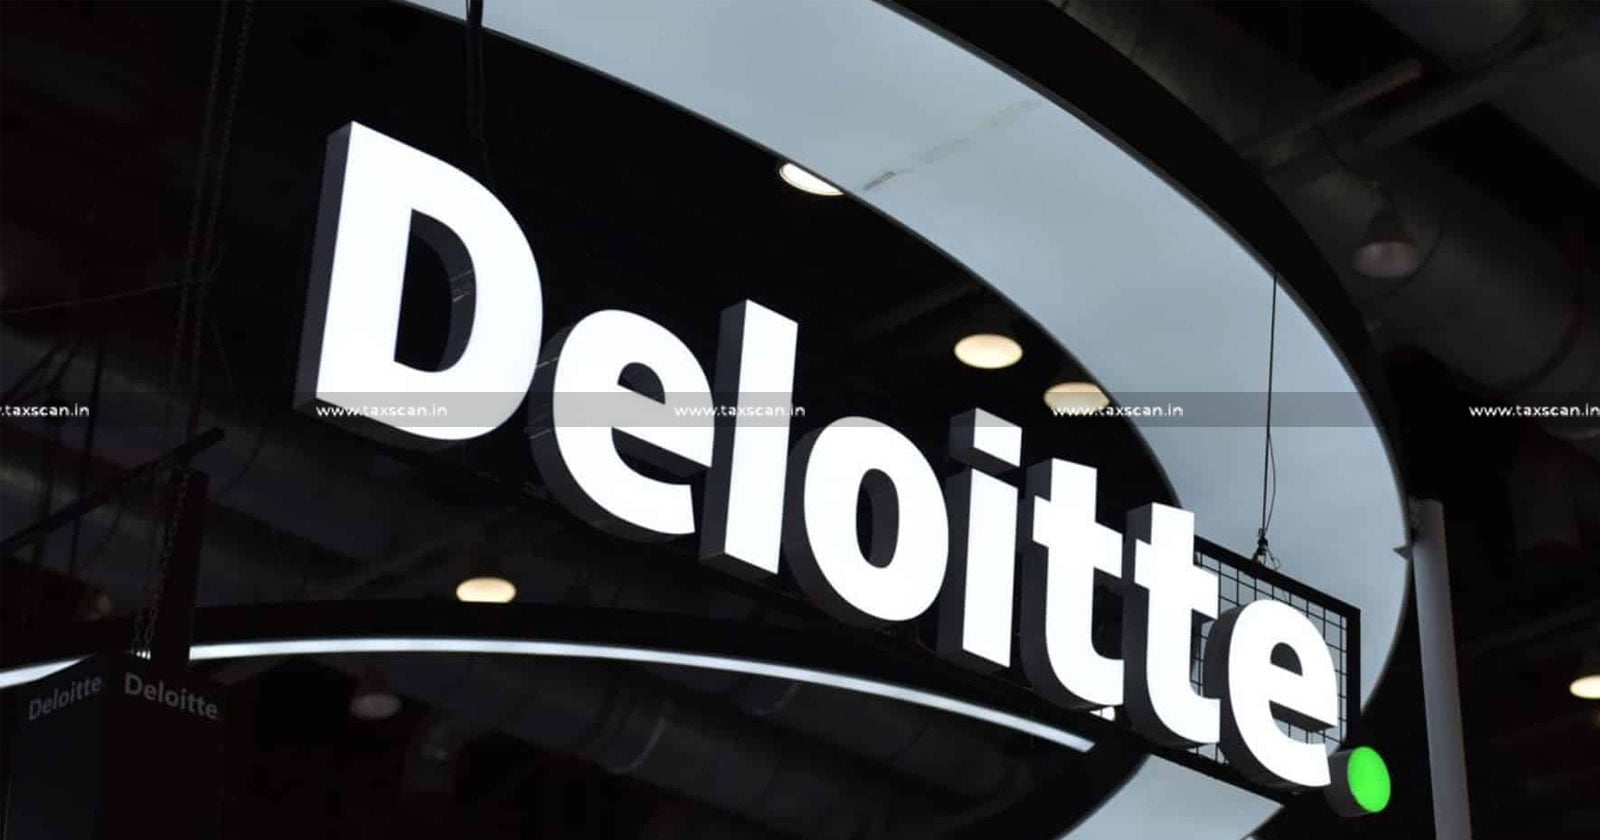 B. com - Vacancy - Deloitte - Vacancy in Deloitte - B. com Vacancy in Deloitte - taxscan